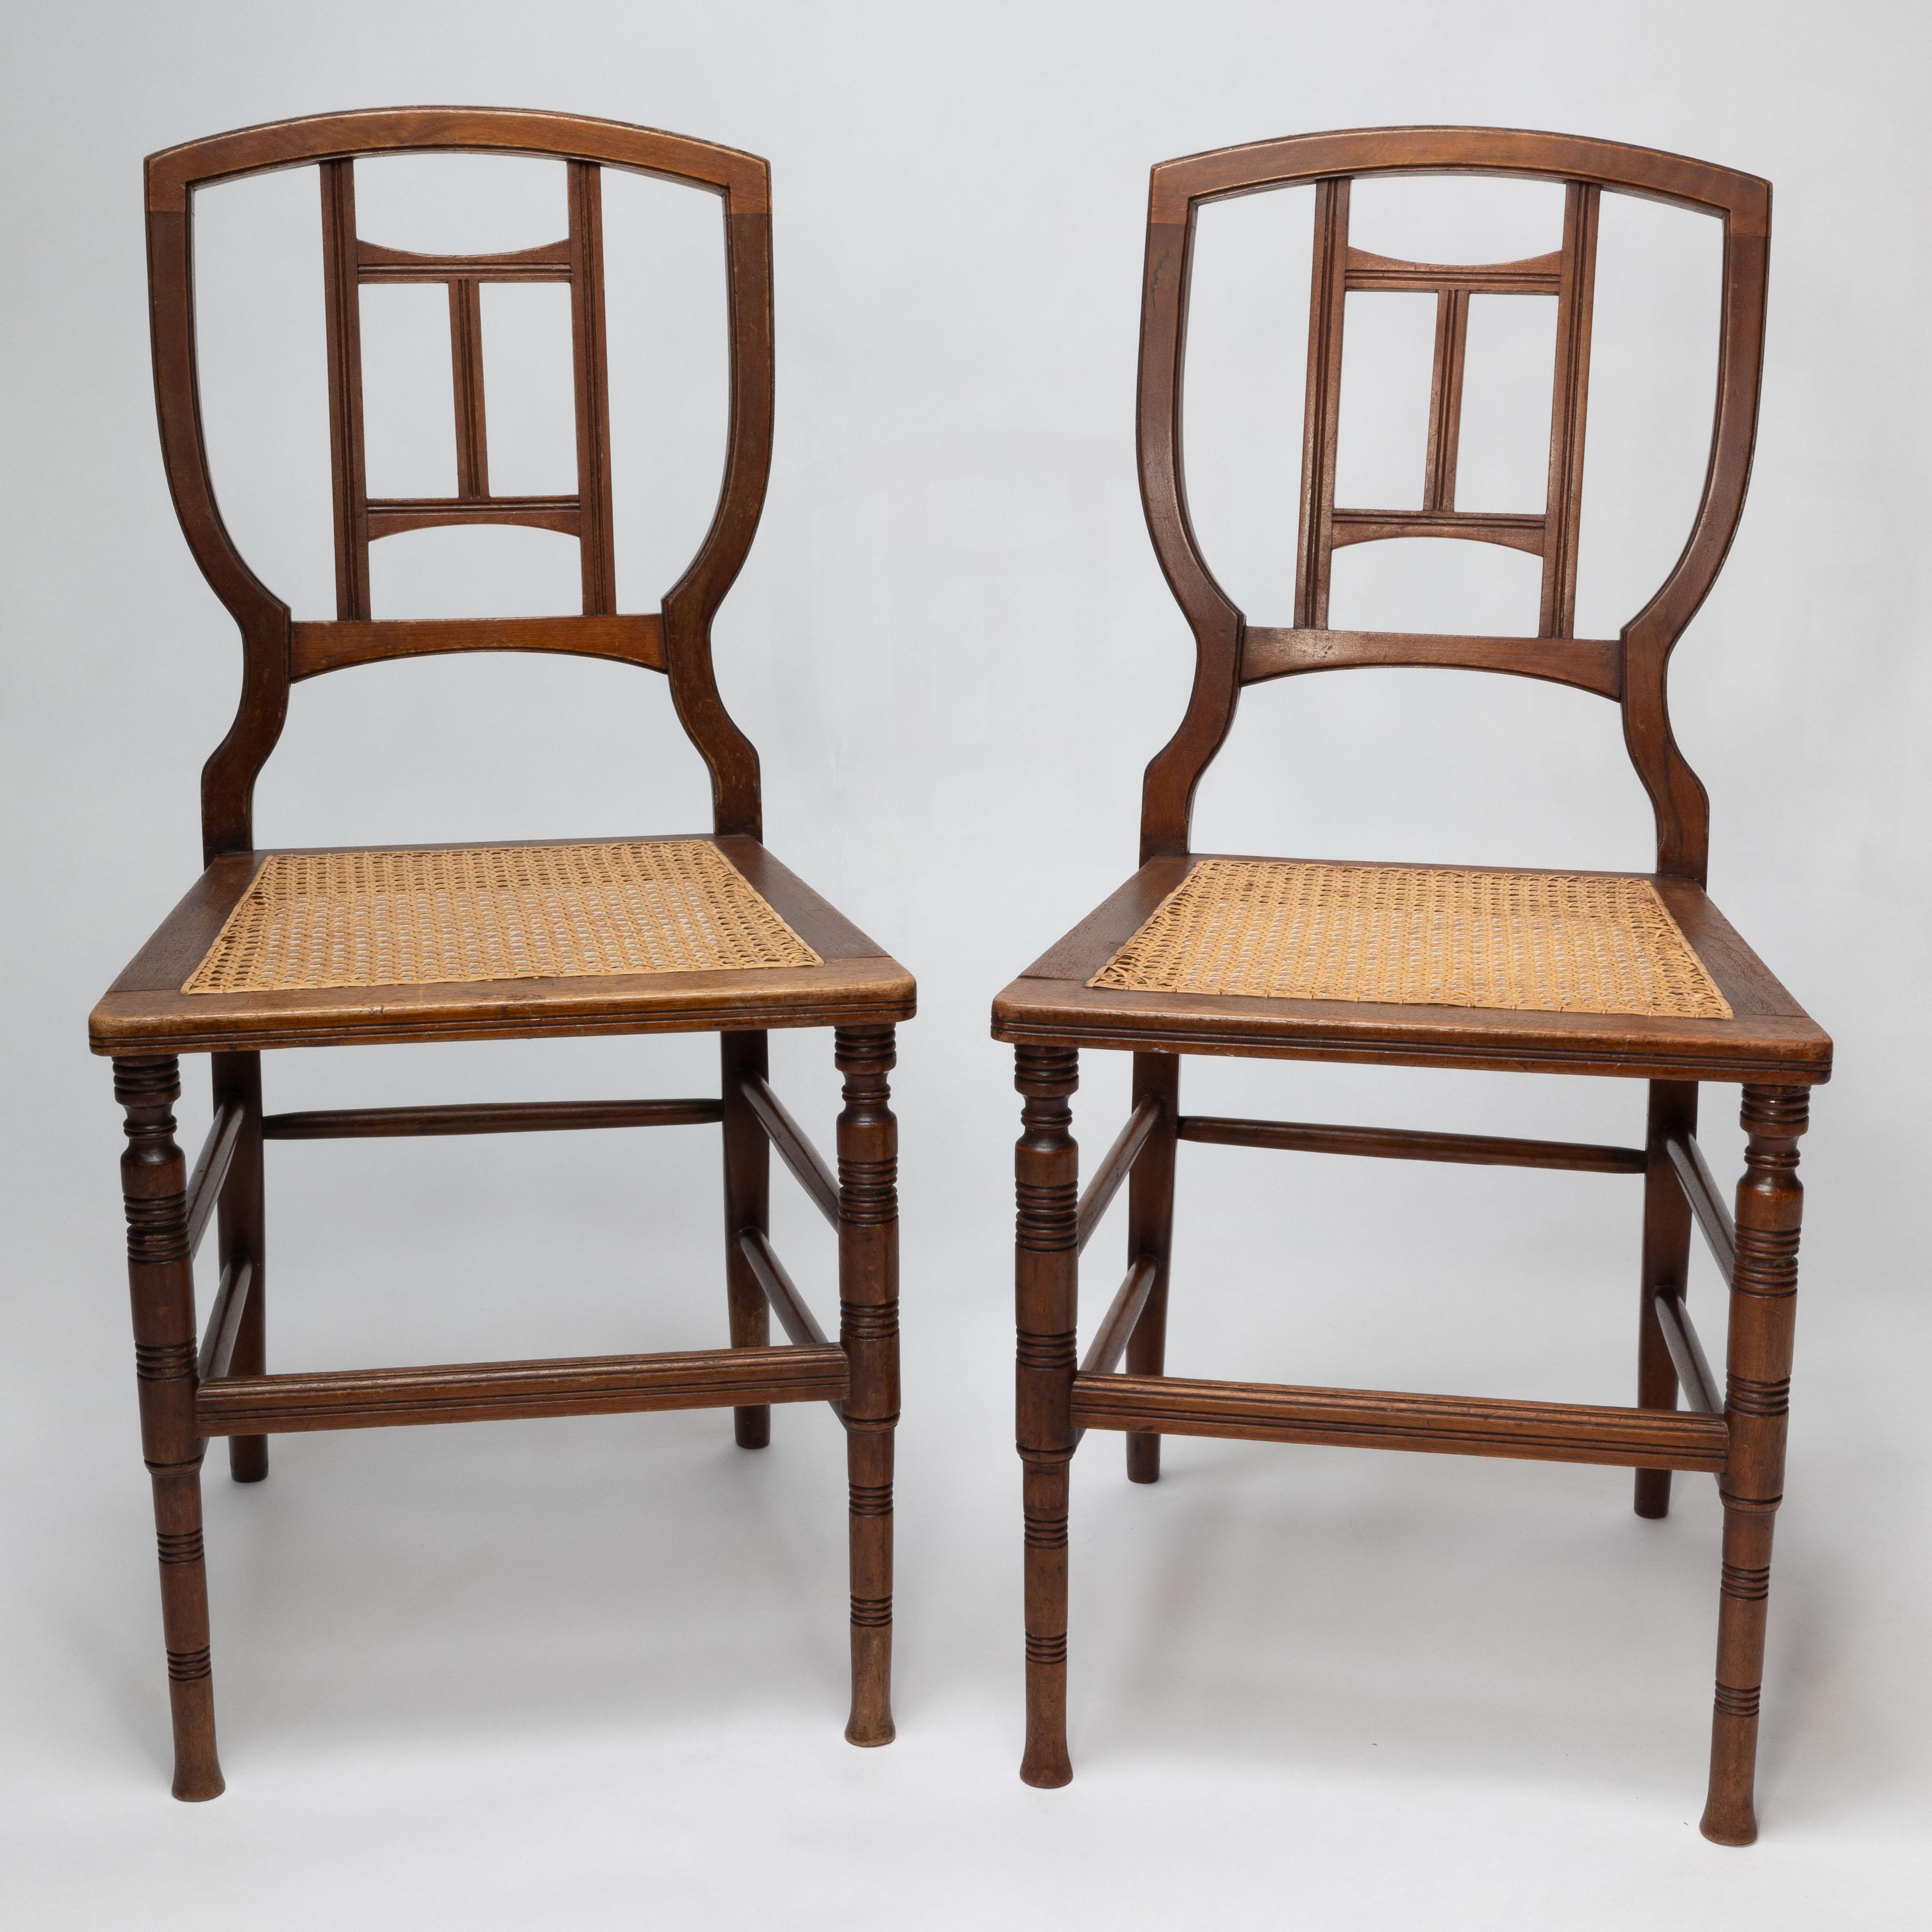 Henry William Batley zugeschrieben für Jas Shoolbred & Co. Ein Paar Beistellstühle aus Buche mit Rohrsitz aus der Ästhetischen Bewegung. 
Unter dem Sitz gestempelt Jas Shoolbred und die Produktionsnummer 820
